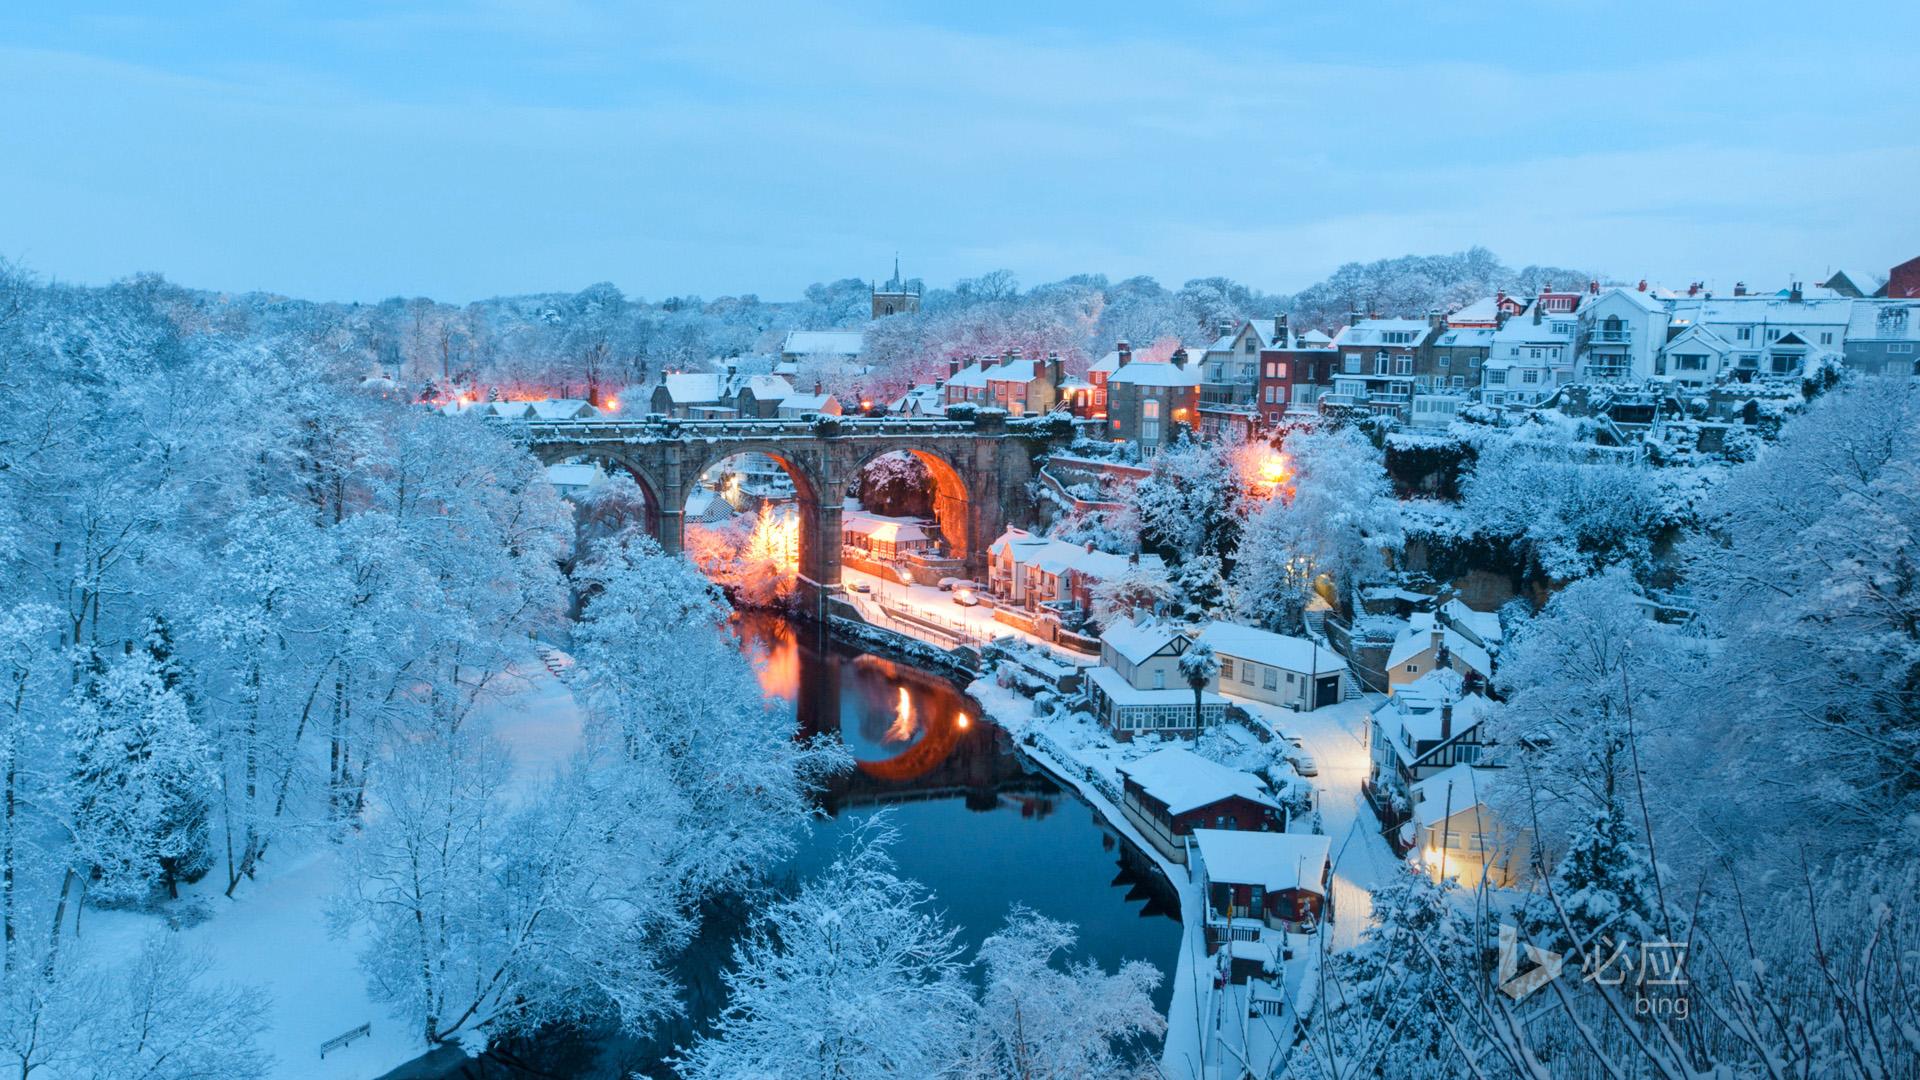 冬季, 雪, 纳尔斯伯勒, 英格兰, 平静小镇, 风景桌面壁纸